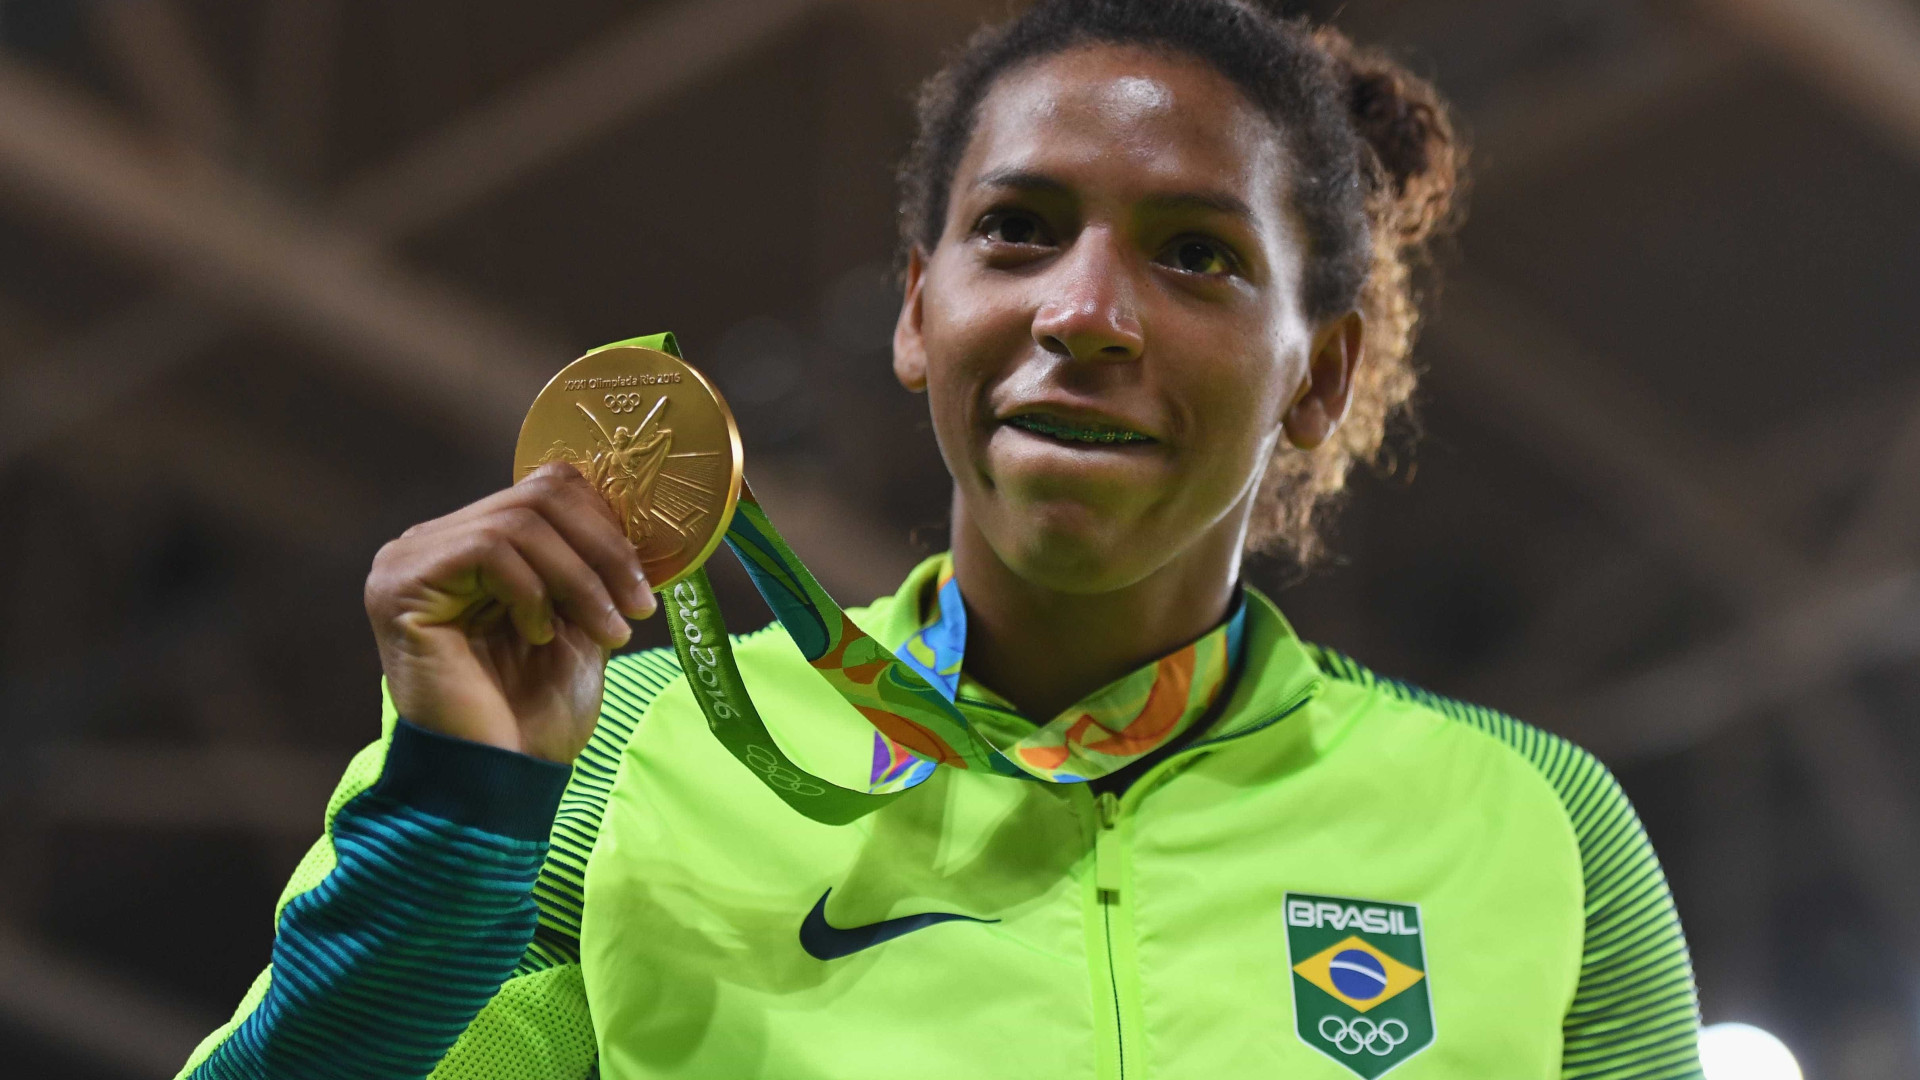 Medalha de ouro na Rio 2016, Rafaela Silva é vítima de racismo de PMs